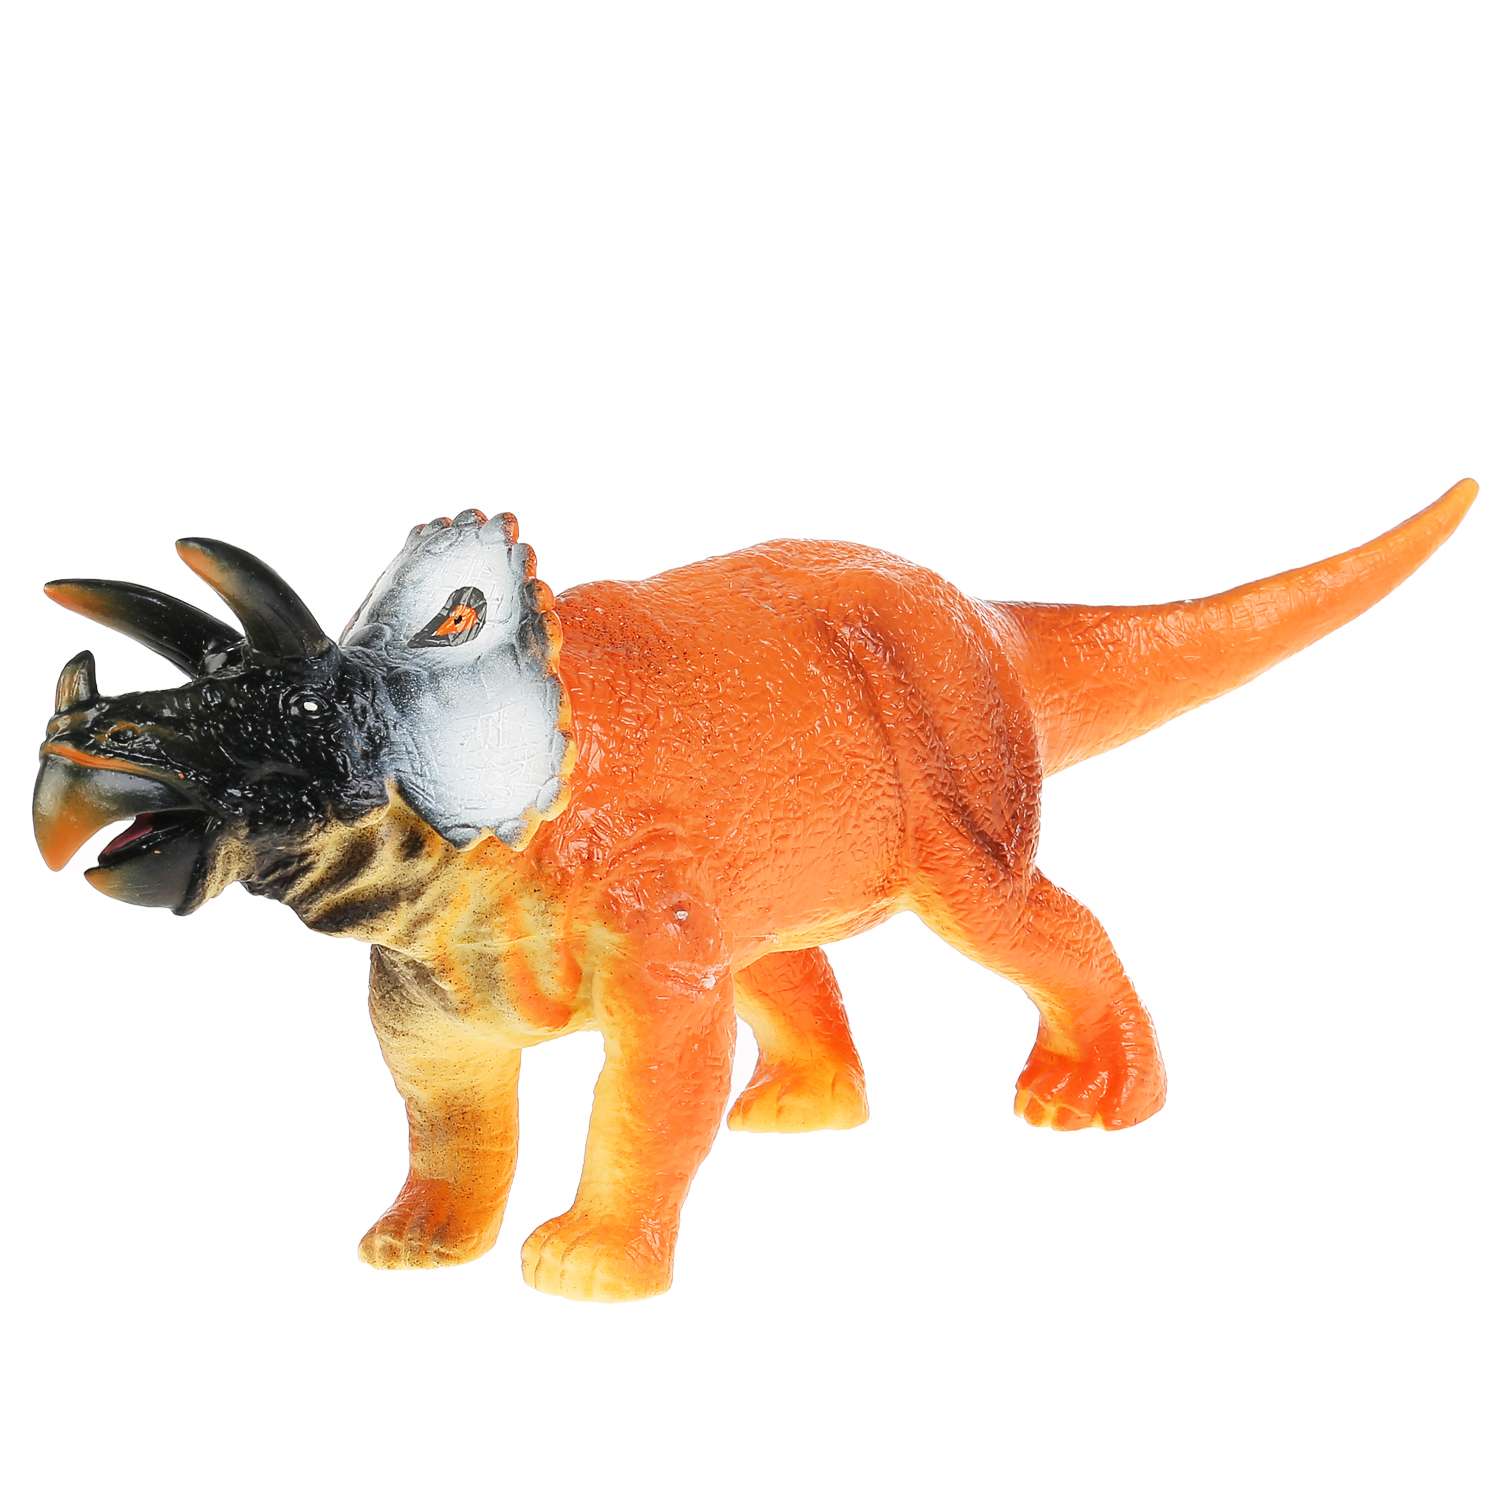 Игрушка Играем Вместе Пластизоль динозавр паразауролофы 298170 - фото 4